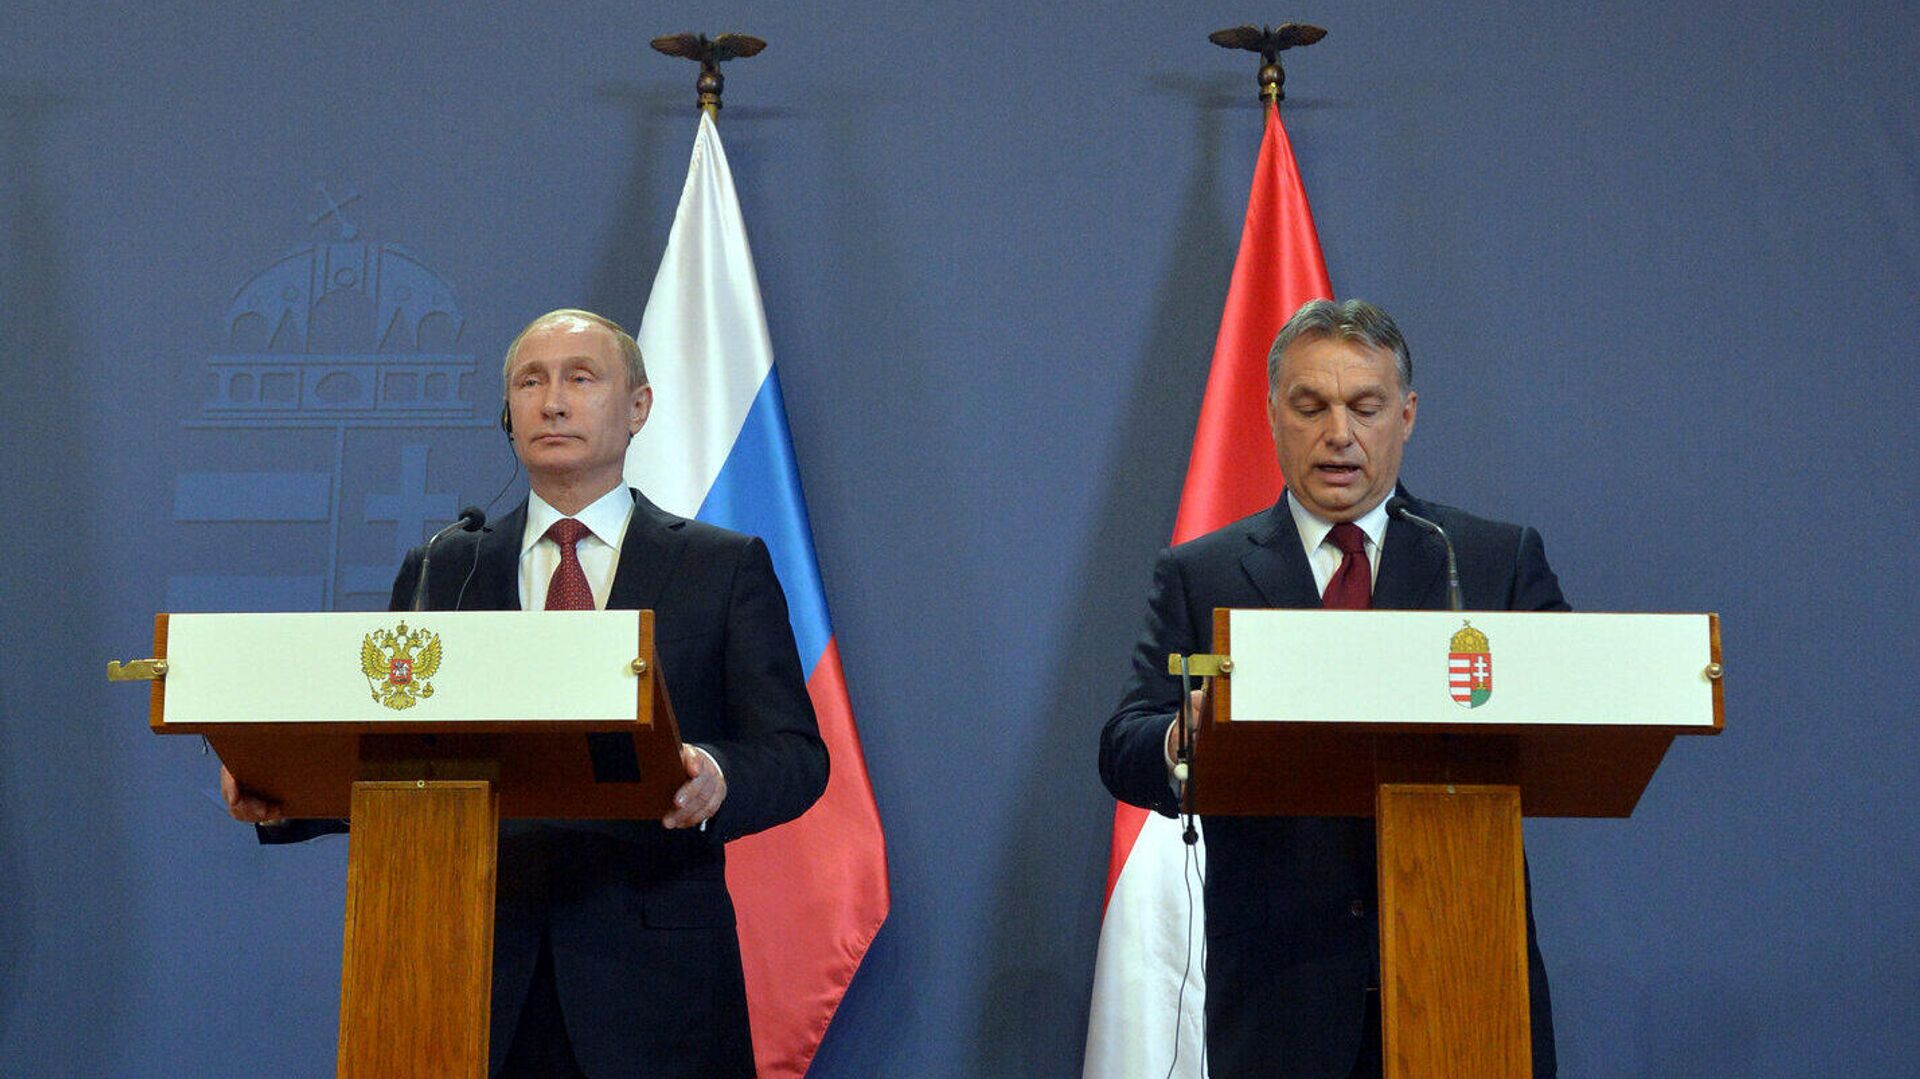 Президент России Владимир Путин и премьер-министр Венгерской Республики Виктор Орбан во время совместной пресс-конференции в Будапеште. 17 февраля 2015 - РИА Новости, 1920, 01.02.2022